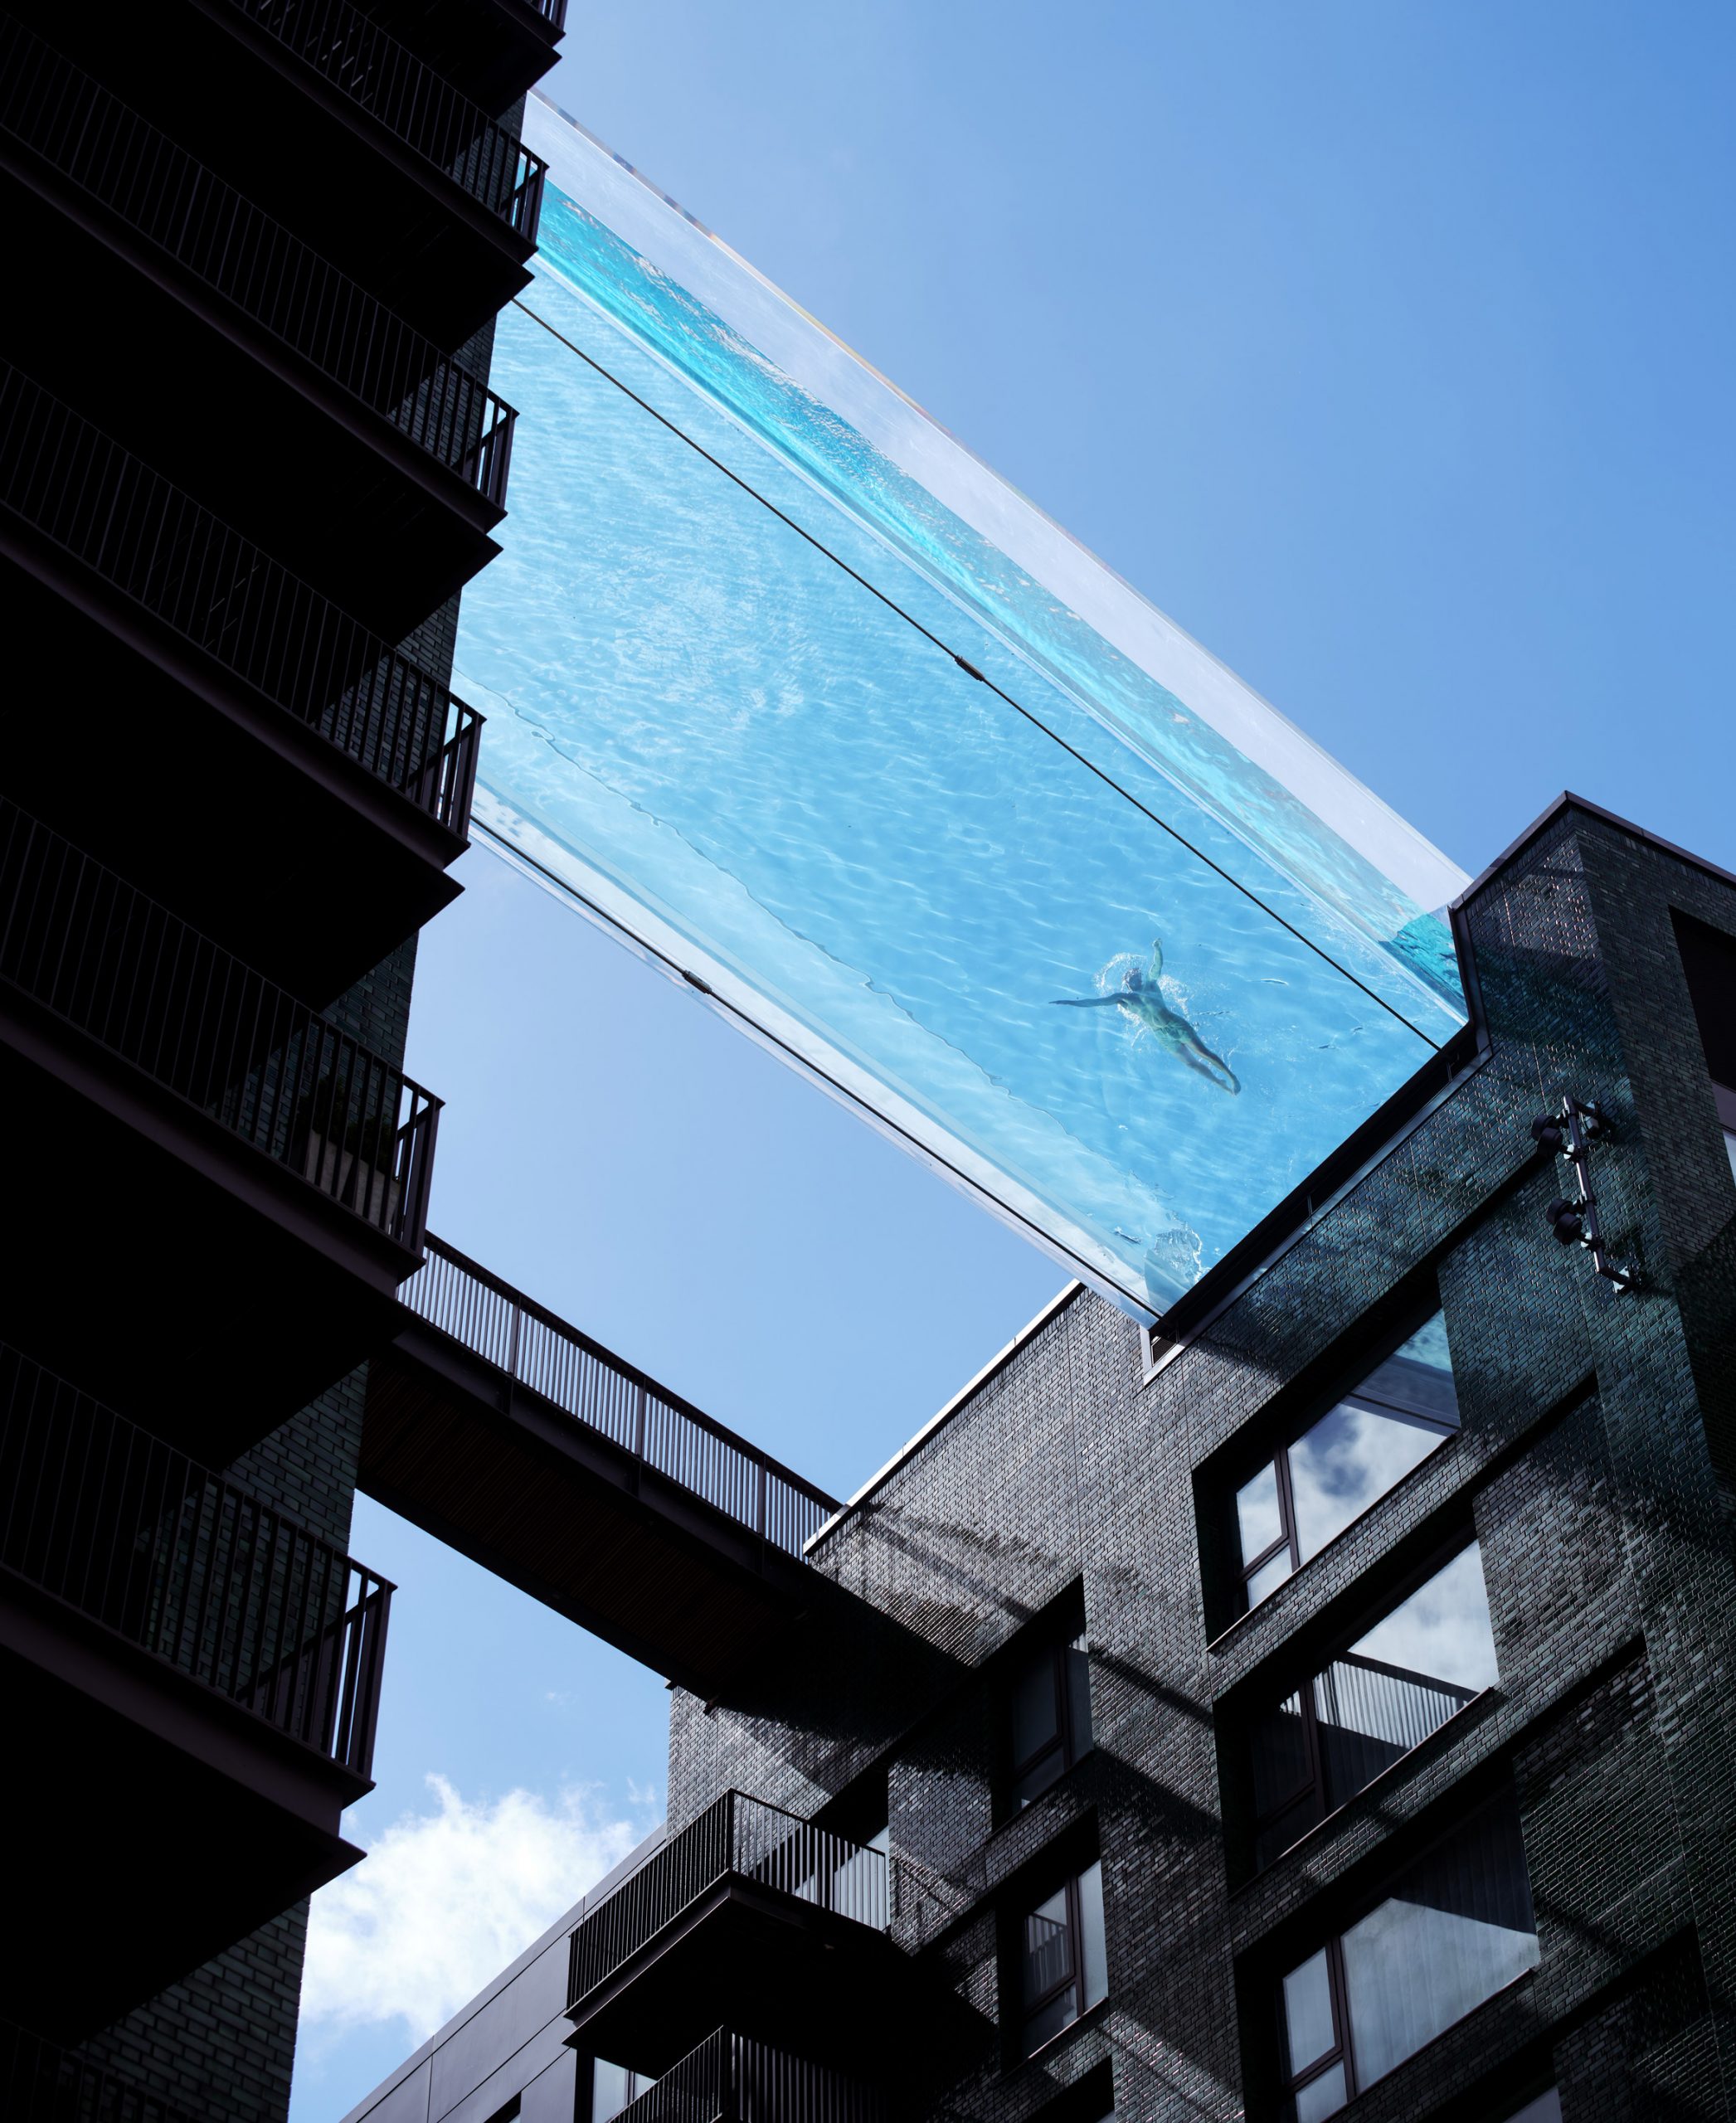 sky pool piscina transparente conecta dois blocos residenciais em londres